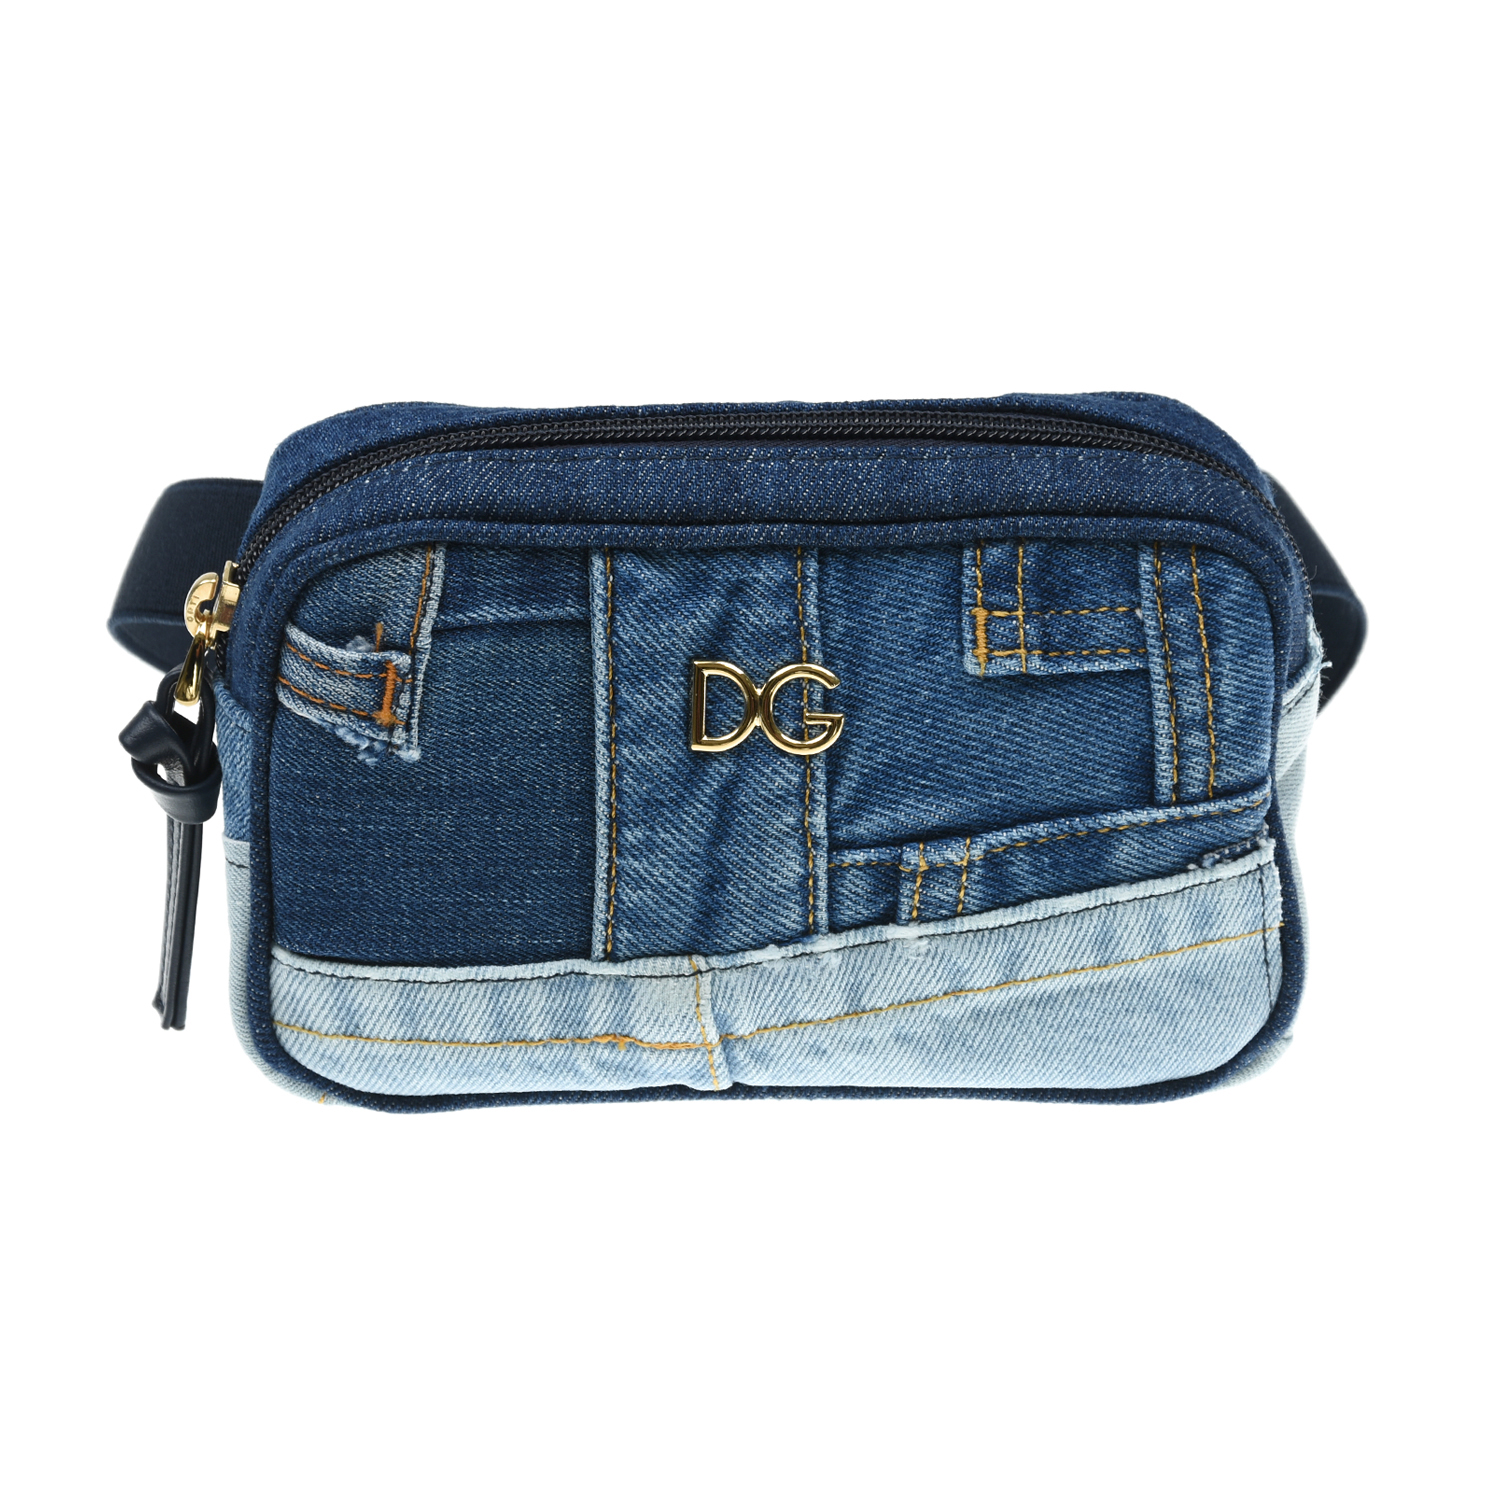 Джинсовая сумка-пояс, 17x11x5 см Dolce&Gabbana детская, размер unica, цвет синий - фото 1